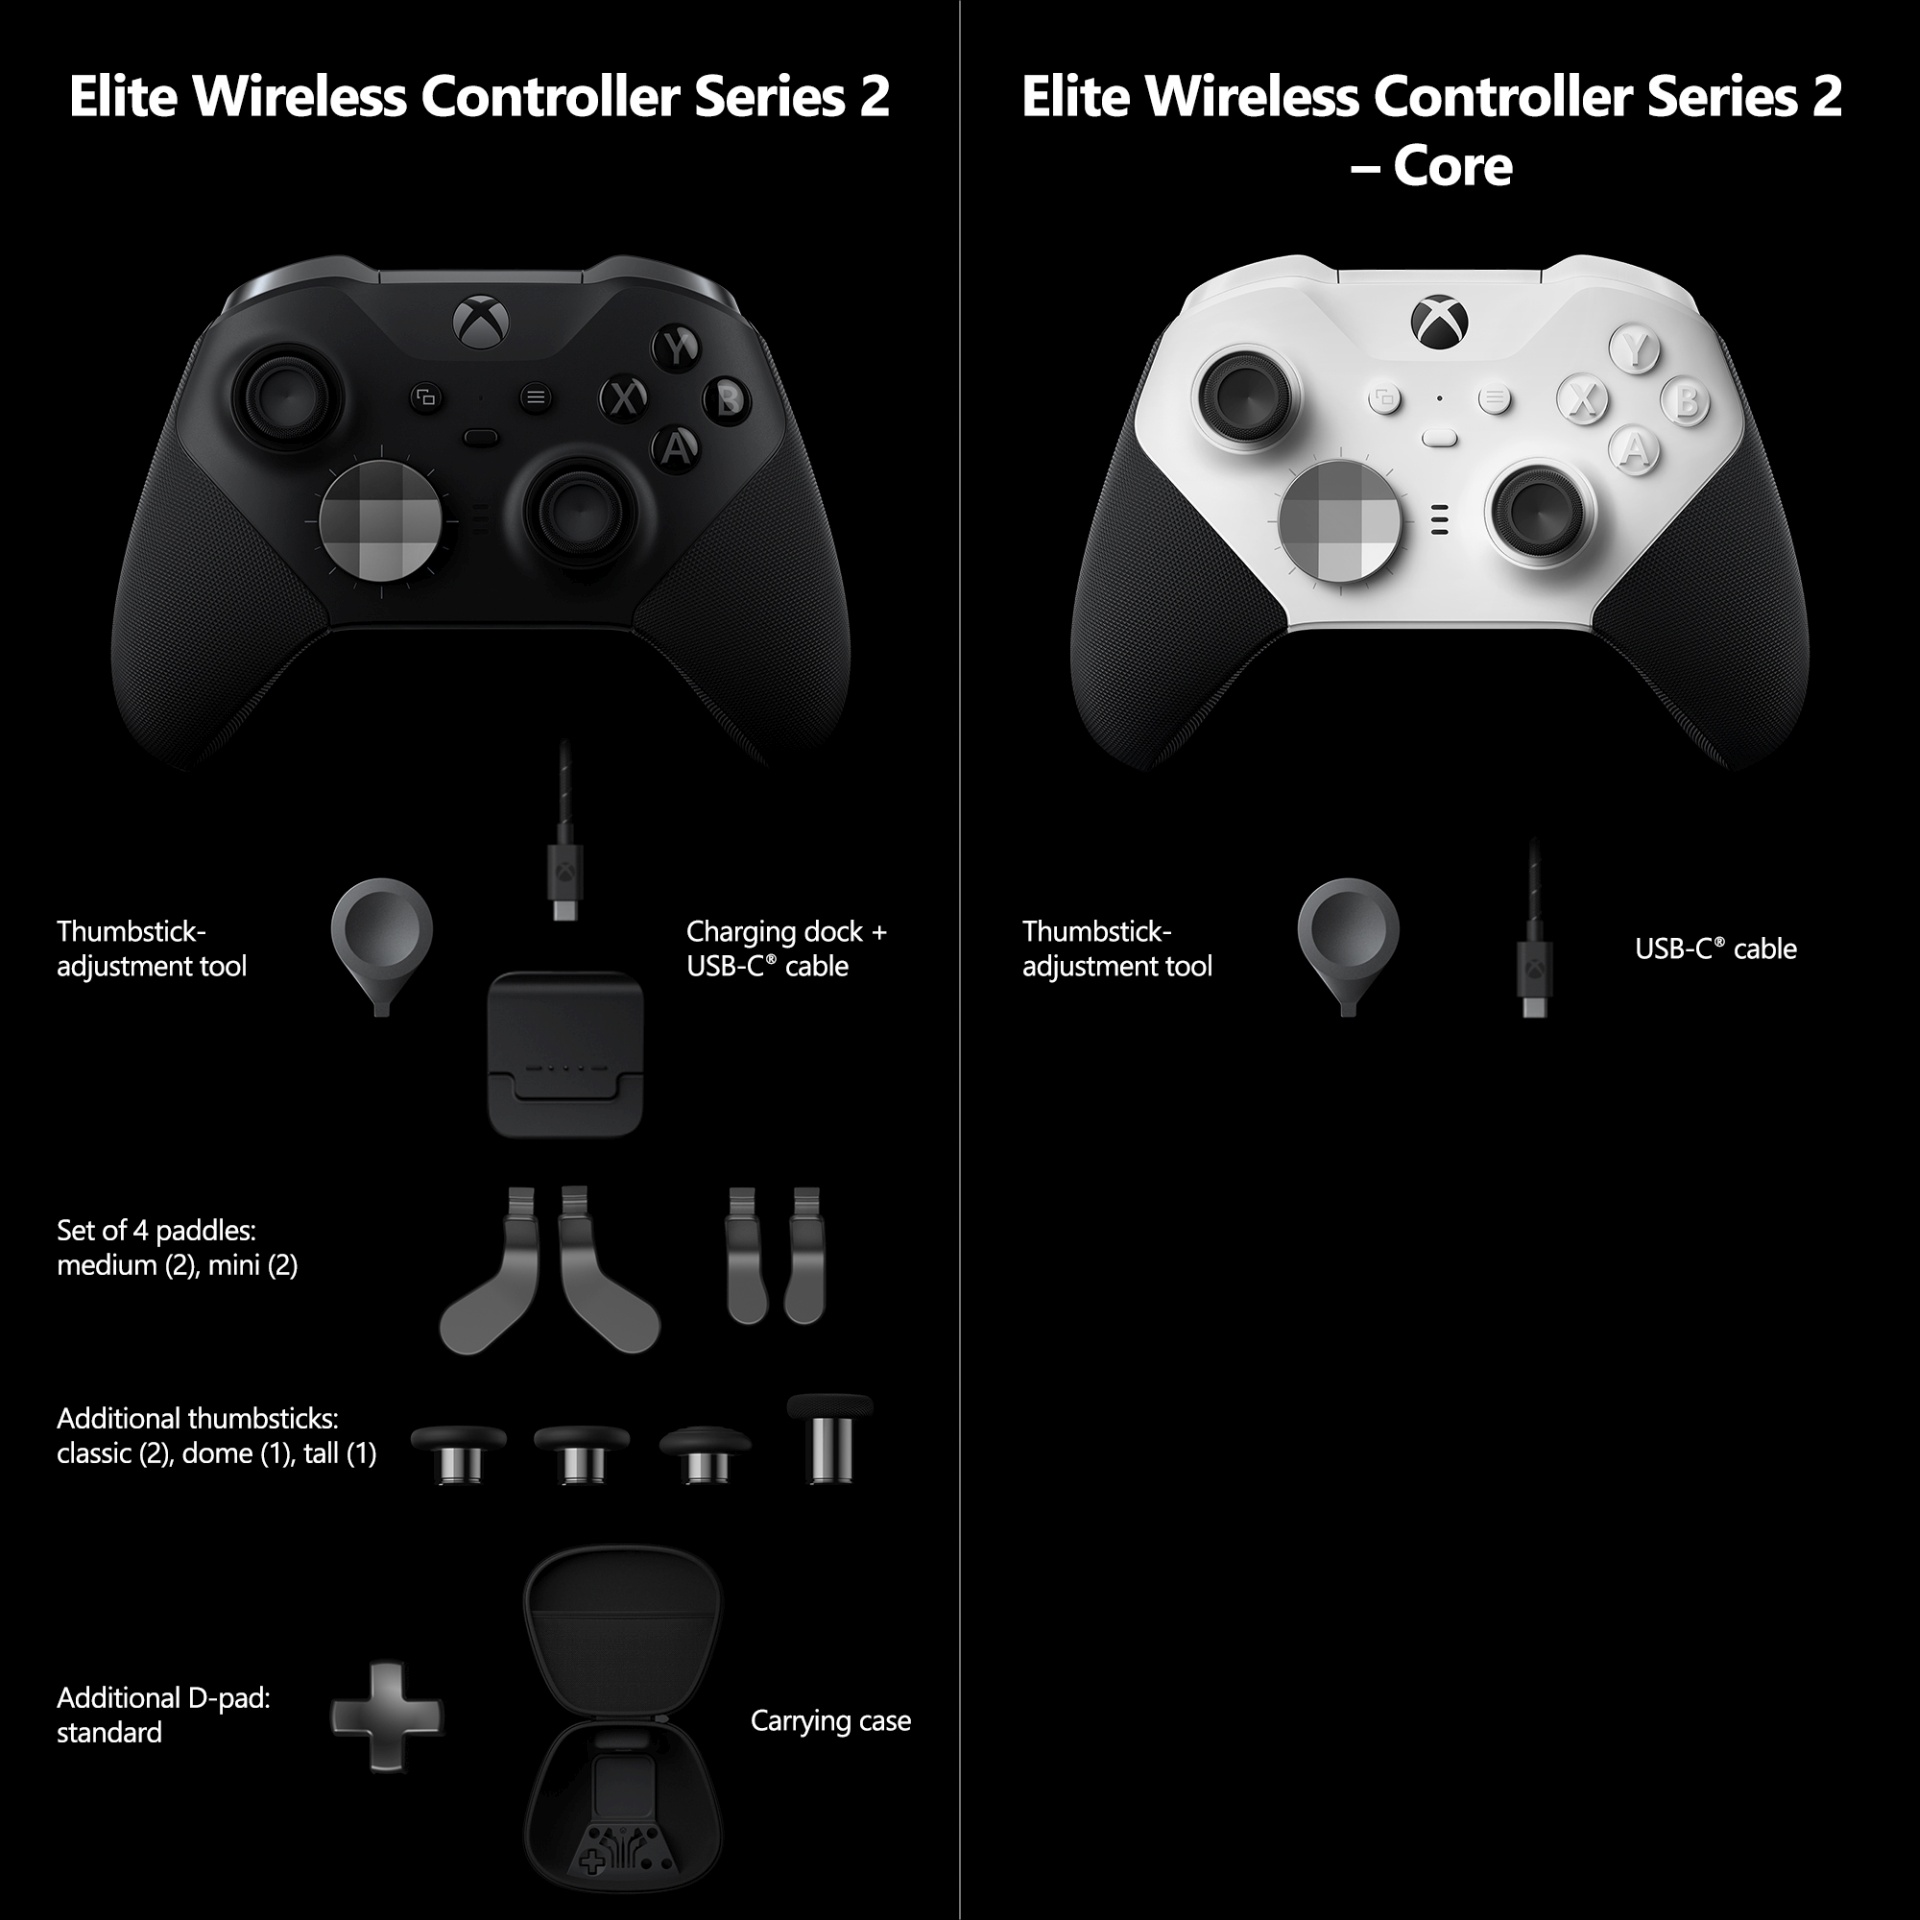 Spielen wie die Profis mit dem neuen Xbox Elite Wireless Controller Series 2 - Core